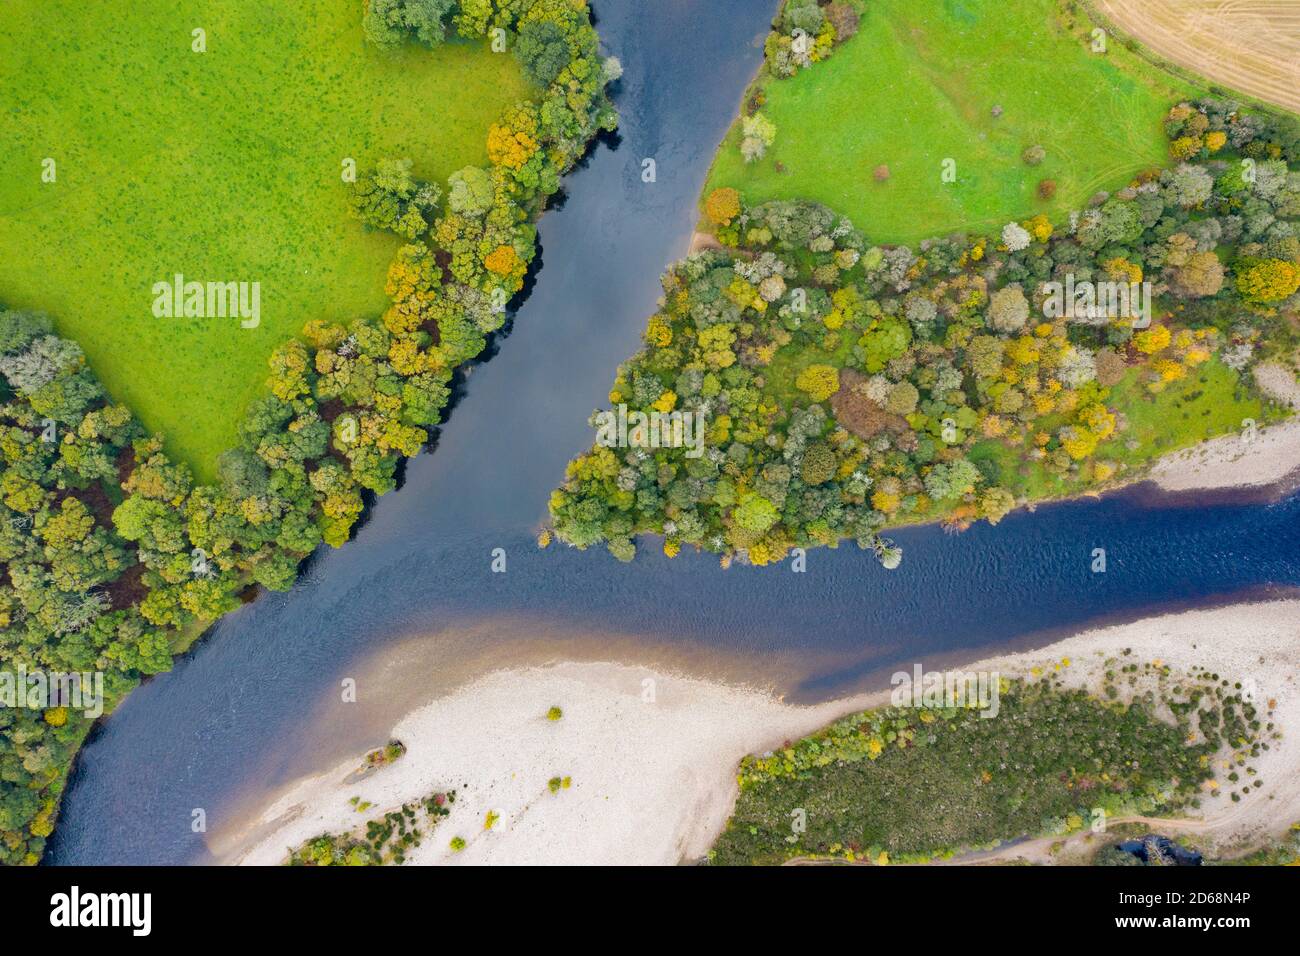 Herbstansicht des Zusammenflusses von Tay und Tummel bei Ballinluig. Der Fluss Tay (oben) und der Fluss Tummel sind zwei der wichtigsten Lachsflüsse von ScotlandÕs. Stockfoto